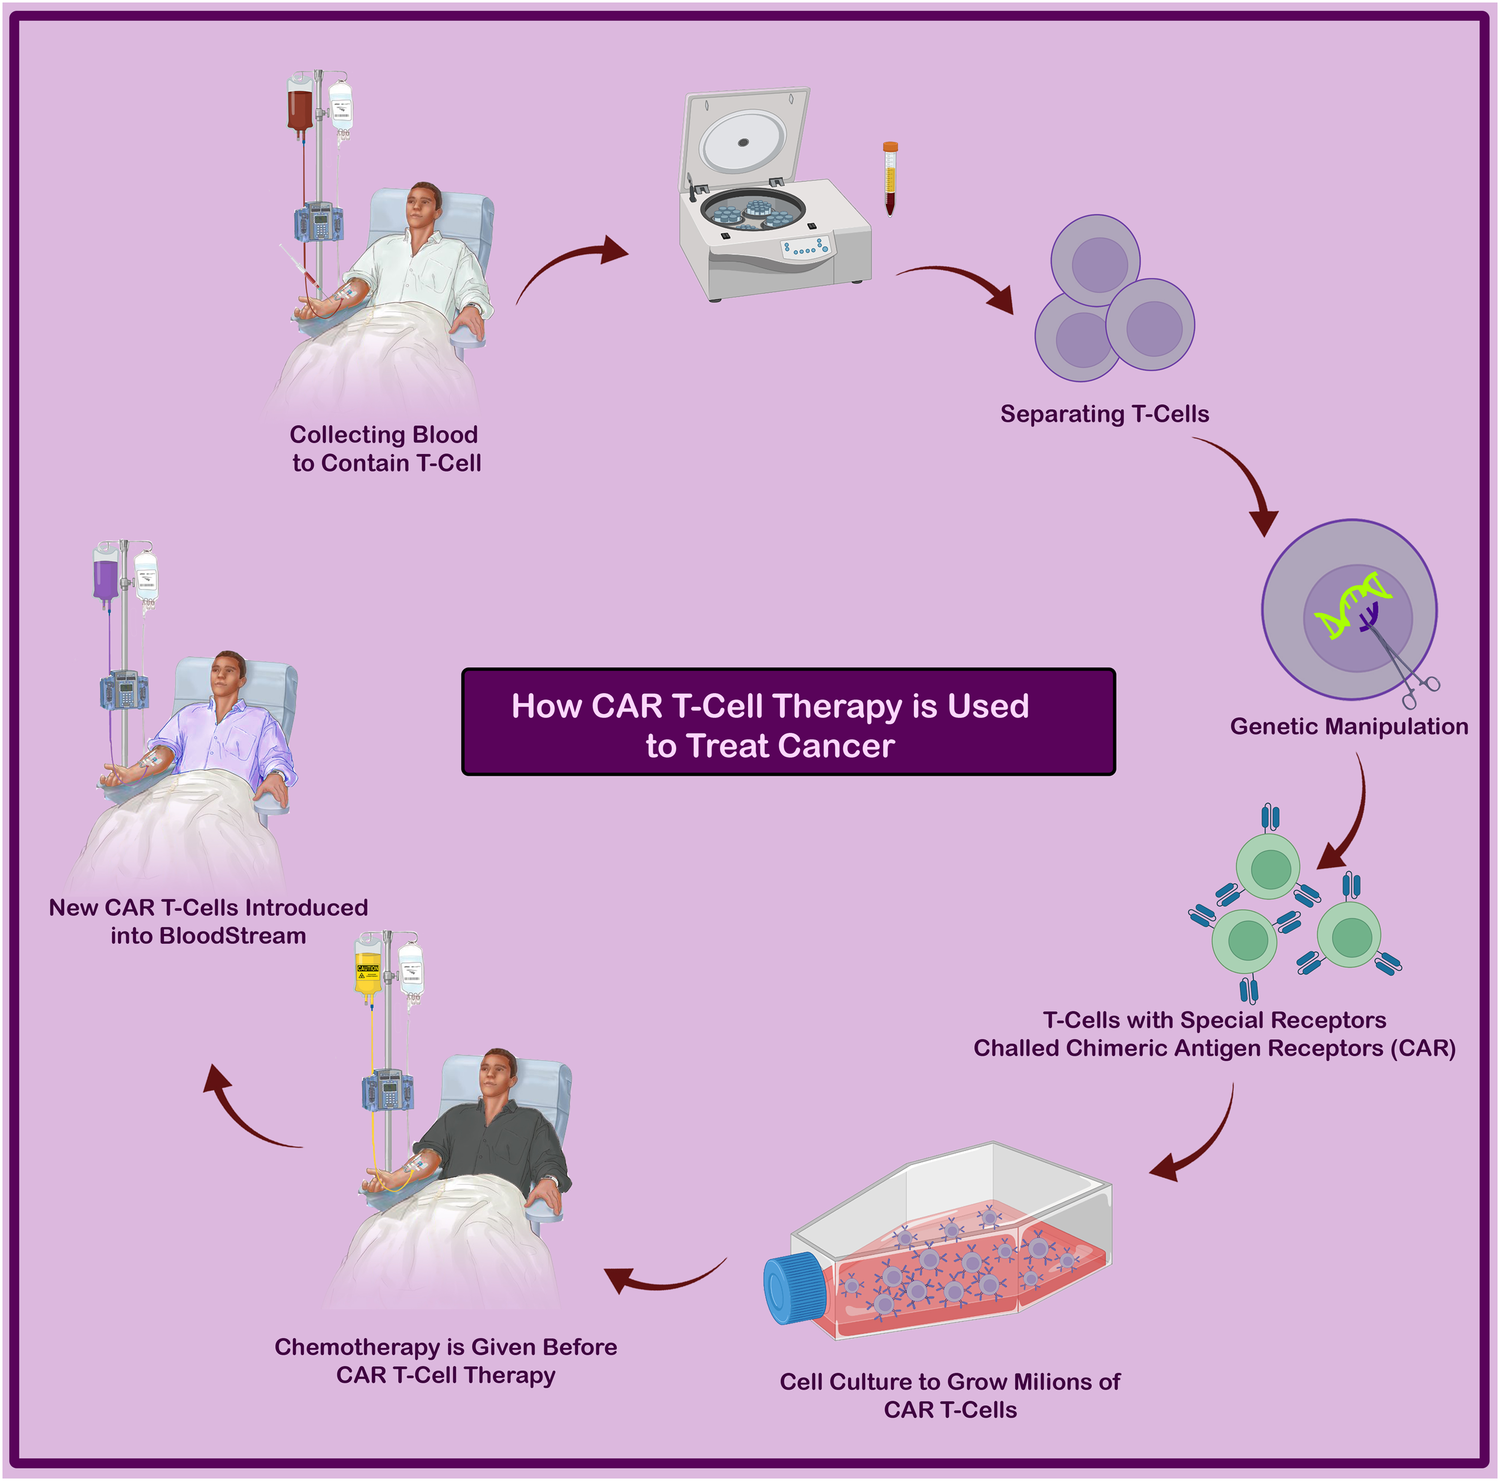 修饰后的 T 细胞经过增殖后，会被输回患者体内，以靶向并消灭癌细胞（图 2）。